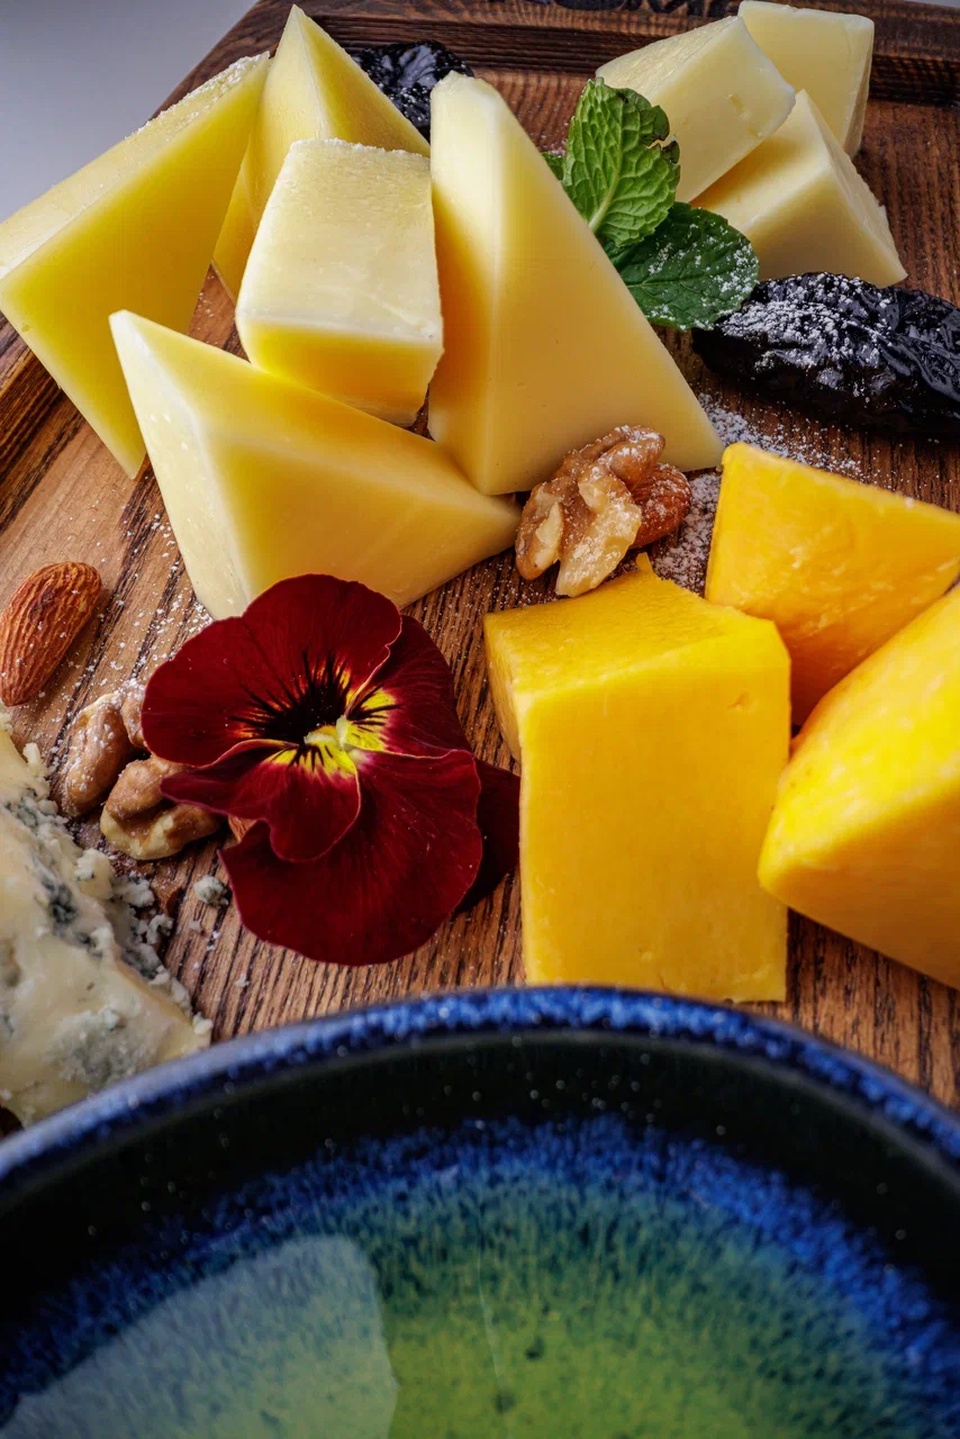 Формаджио из 5 видов сыров - 1 150 ₽, заказать онлайн.